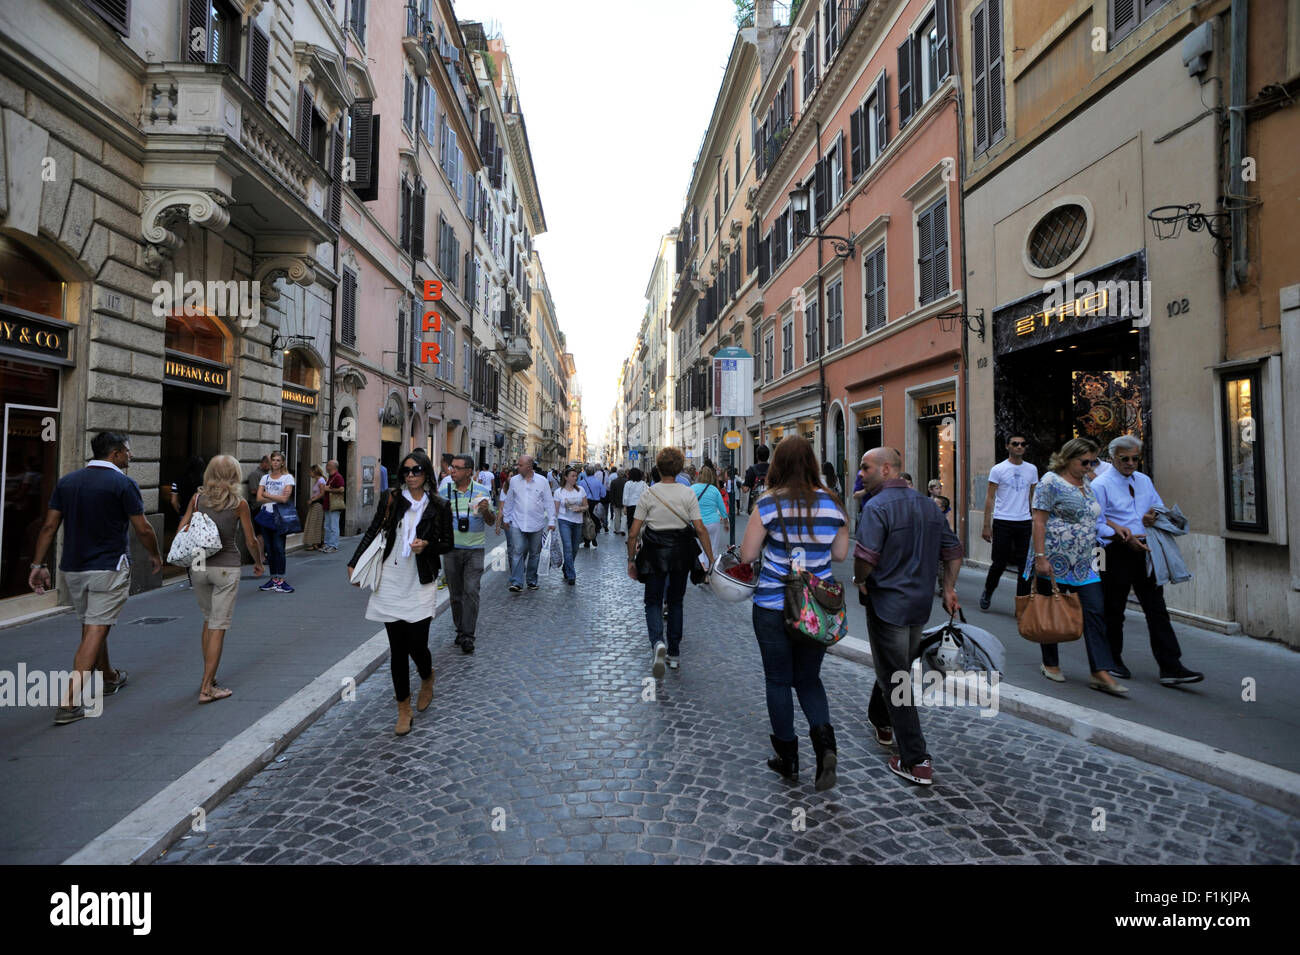 Via del Babuino, Rome, Italy Stock Photo